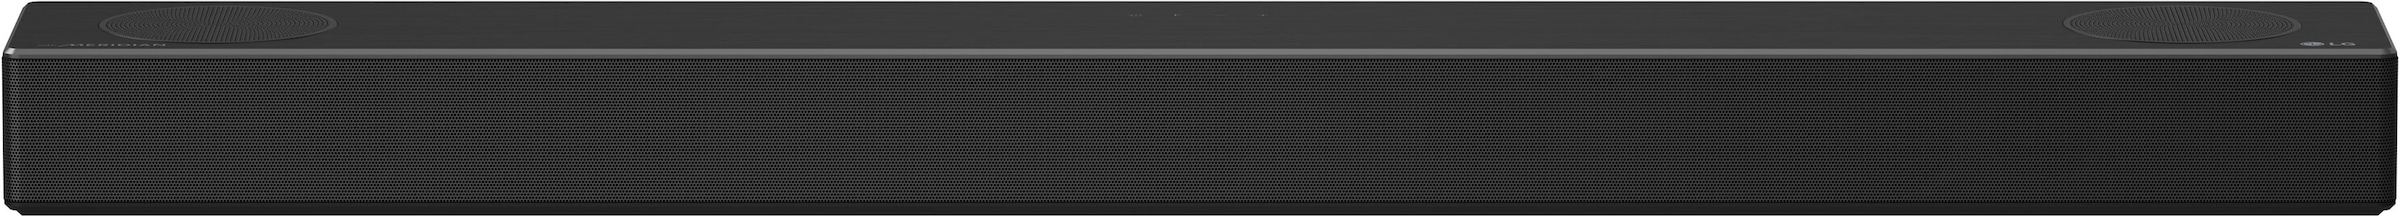 LG Soundbar »DSN7CY«